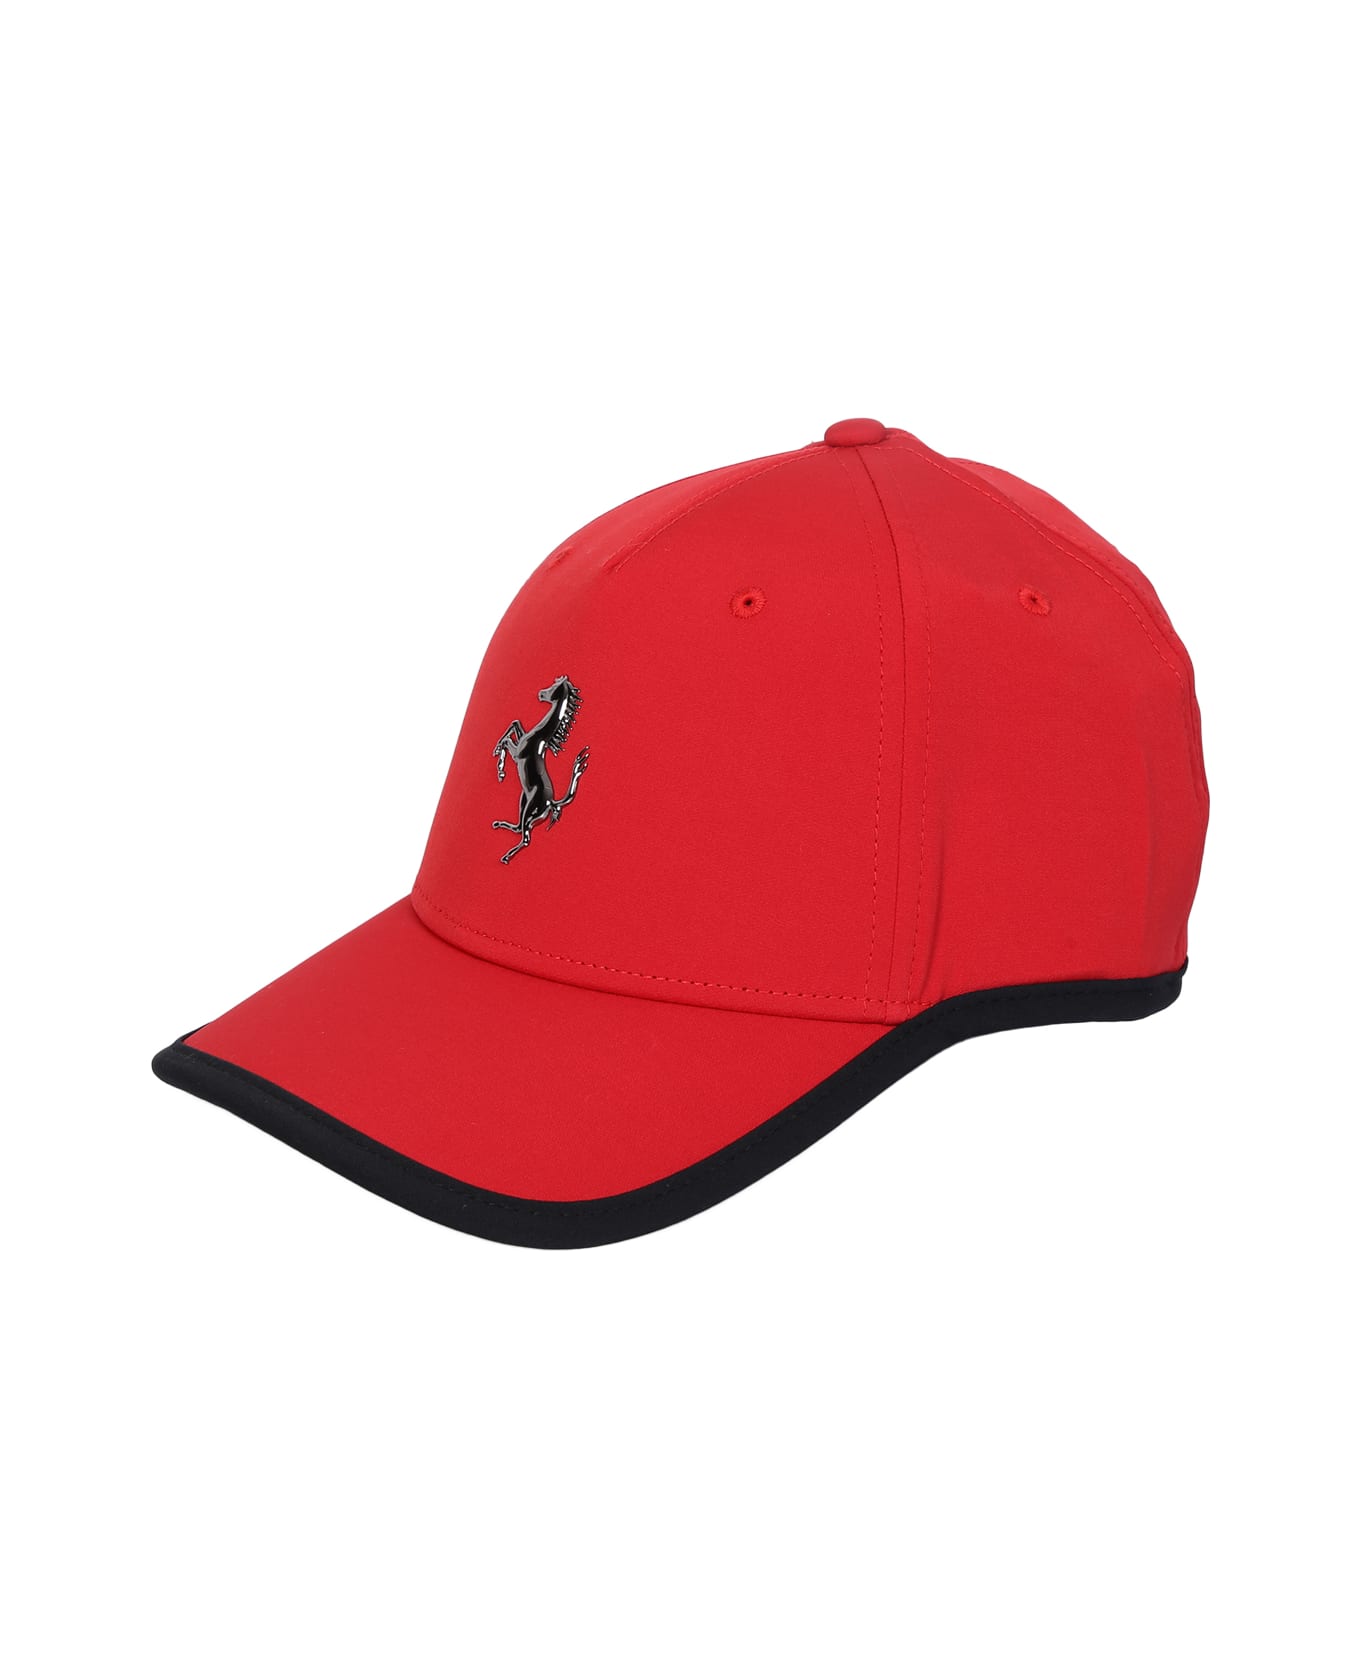 Ferrari Bright Red Cap - Red 帽子